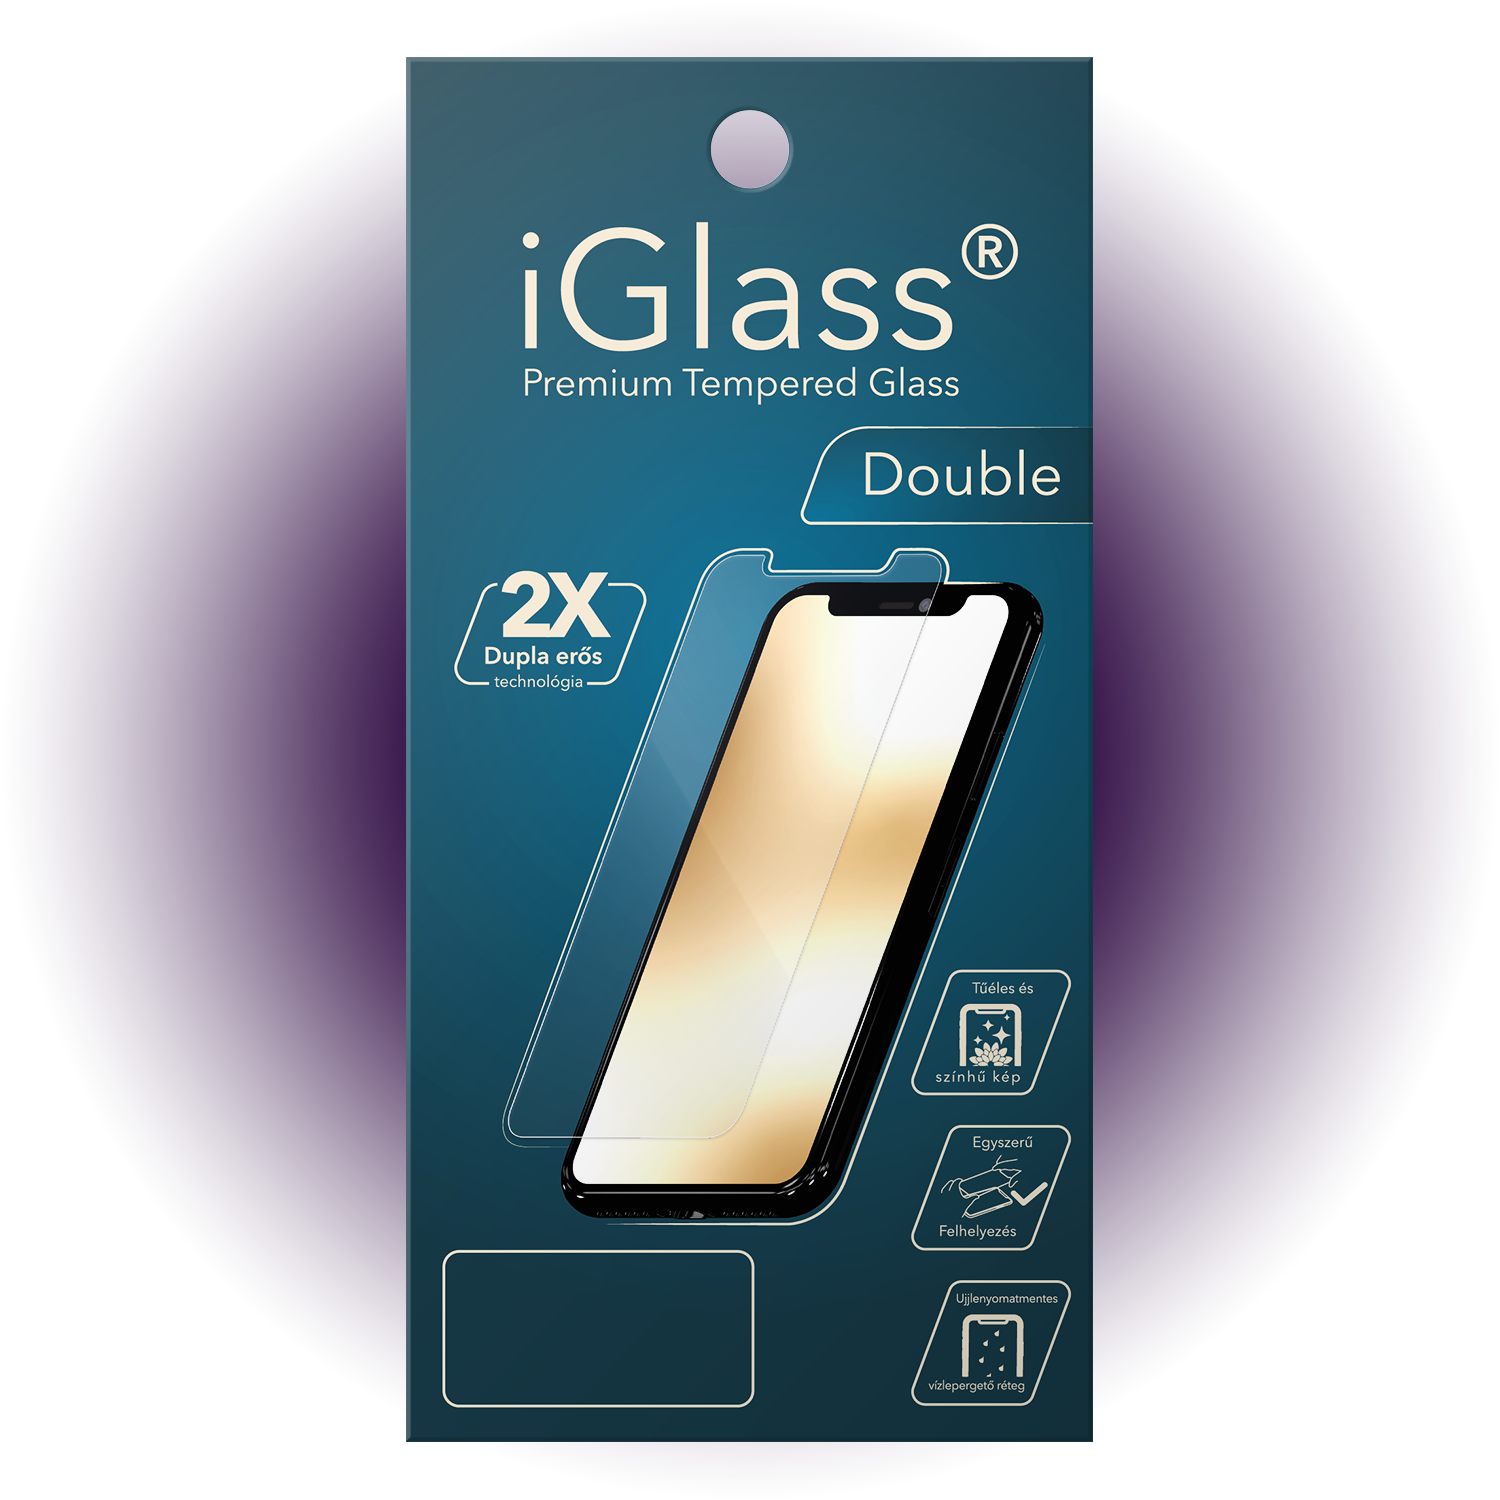 iGlass Double